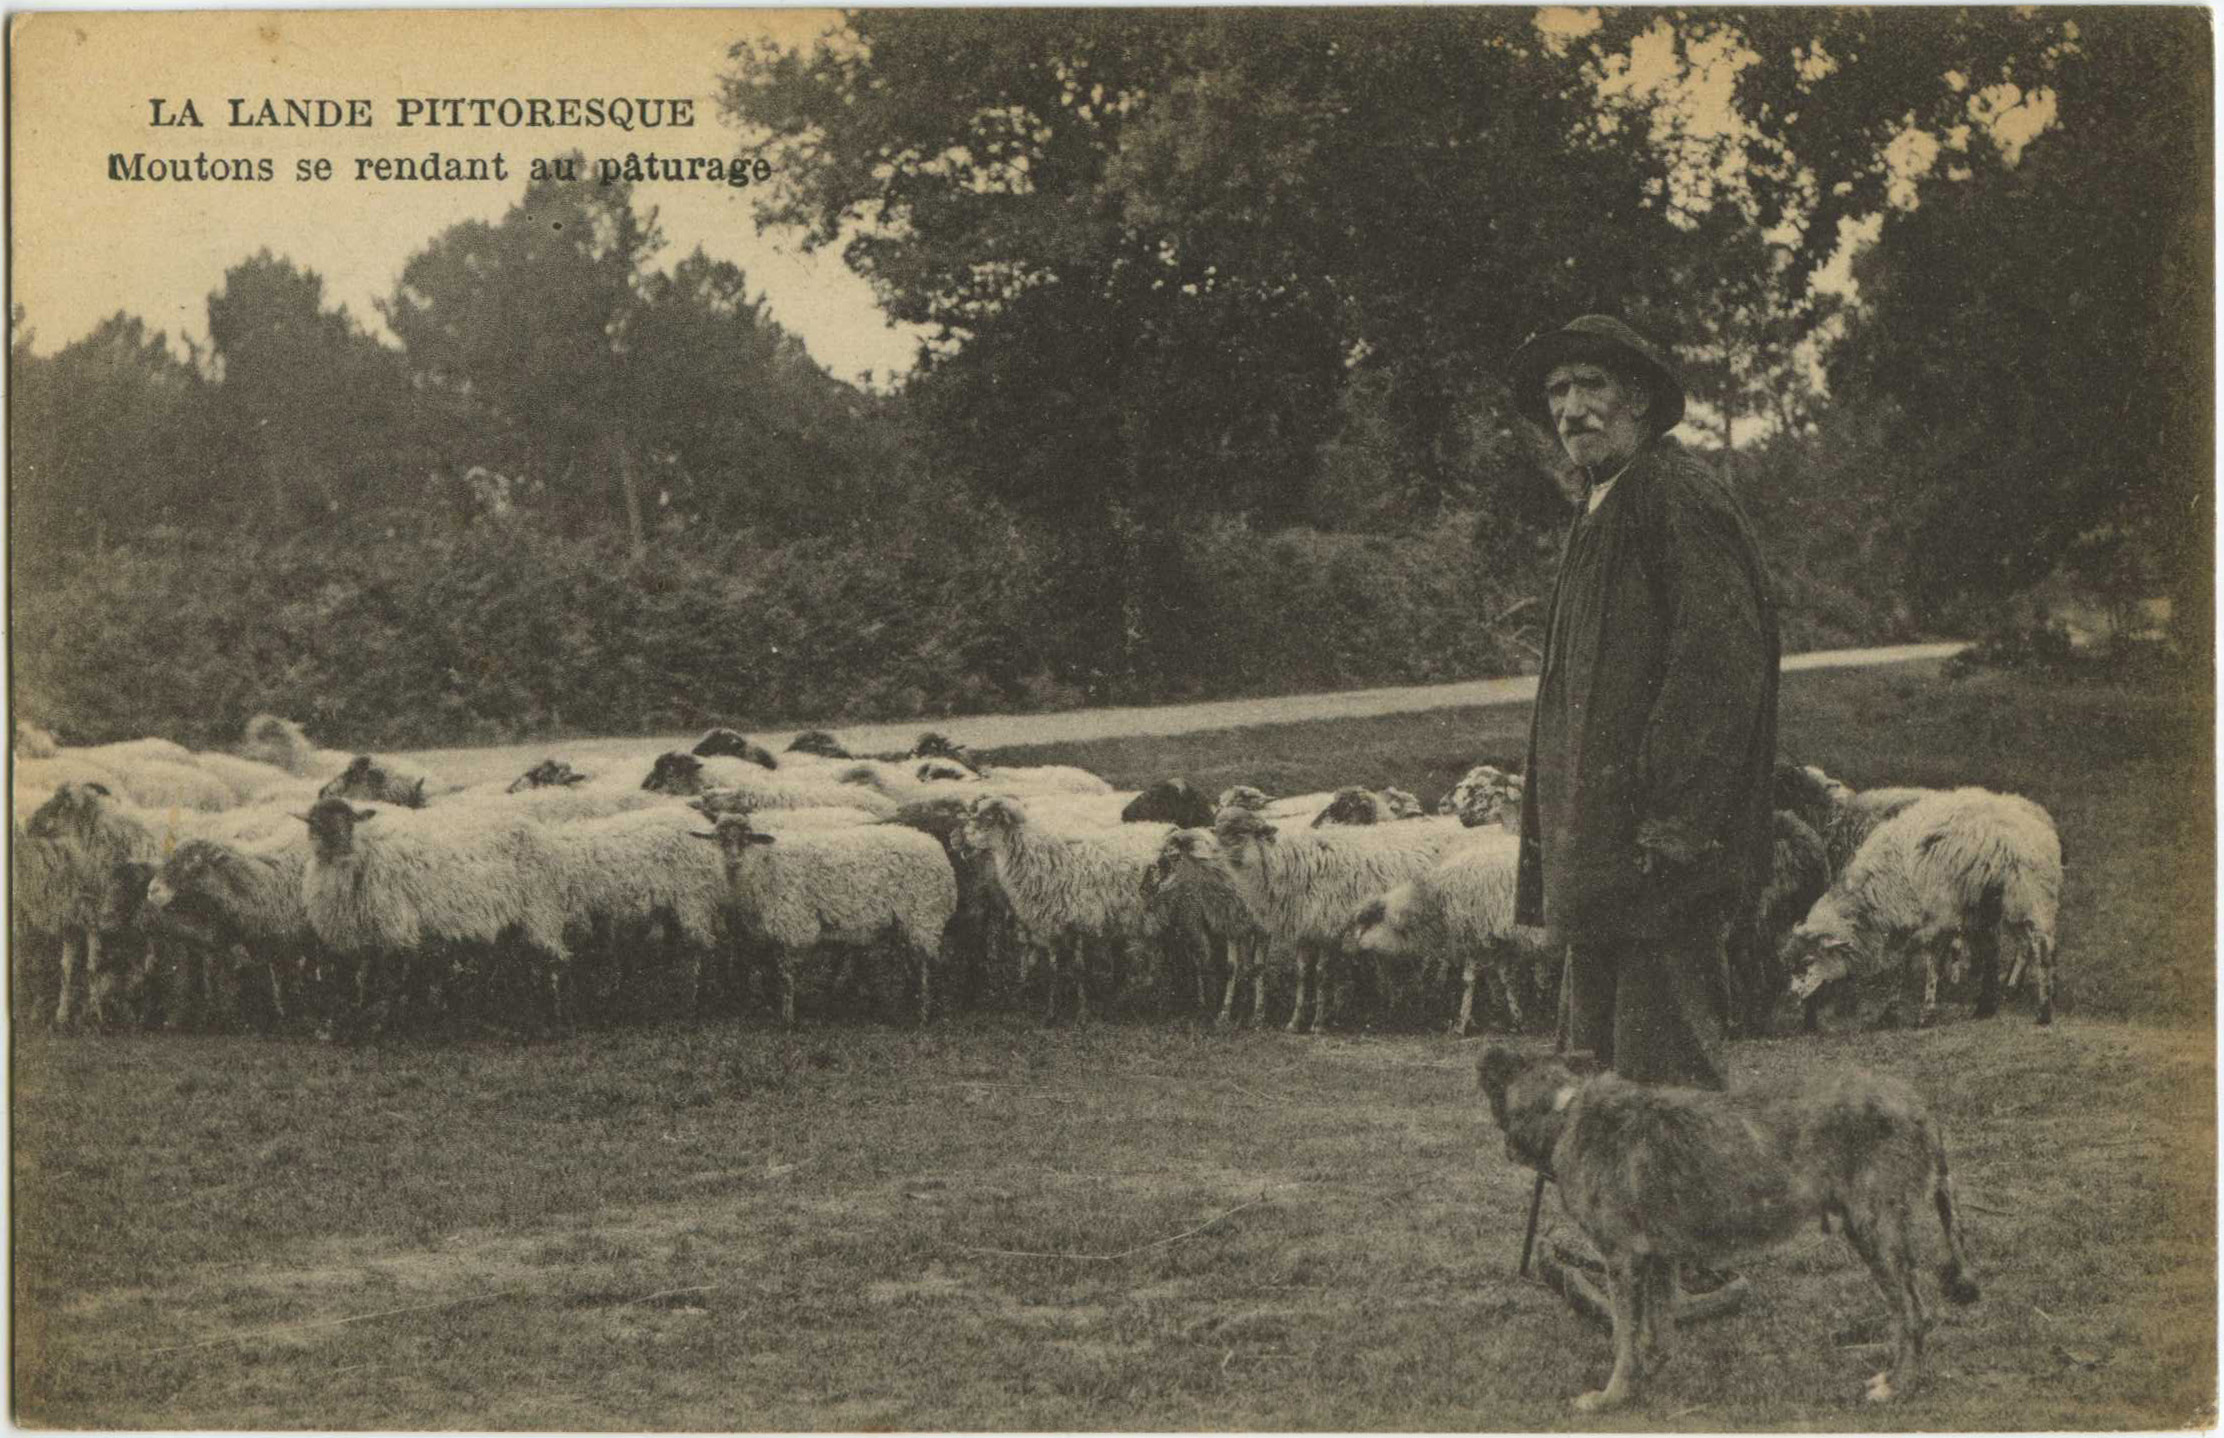 Landes - LA LANDE PITTORESQUE - Moutons se rendant au pâturage